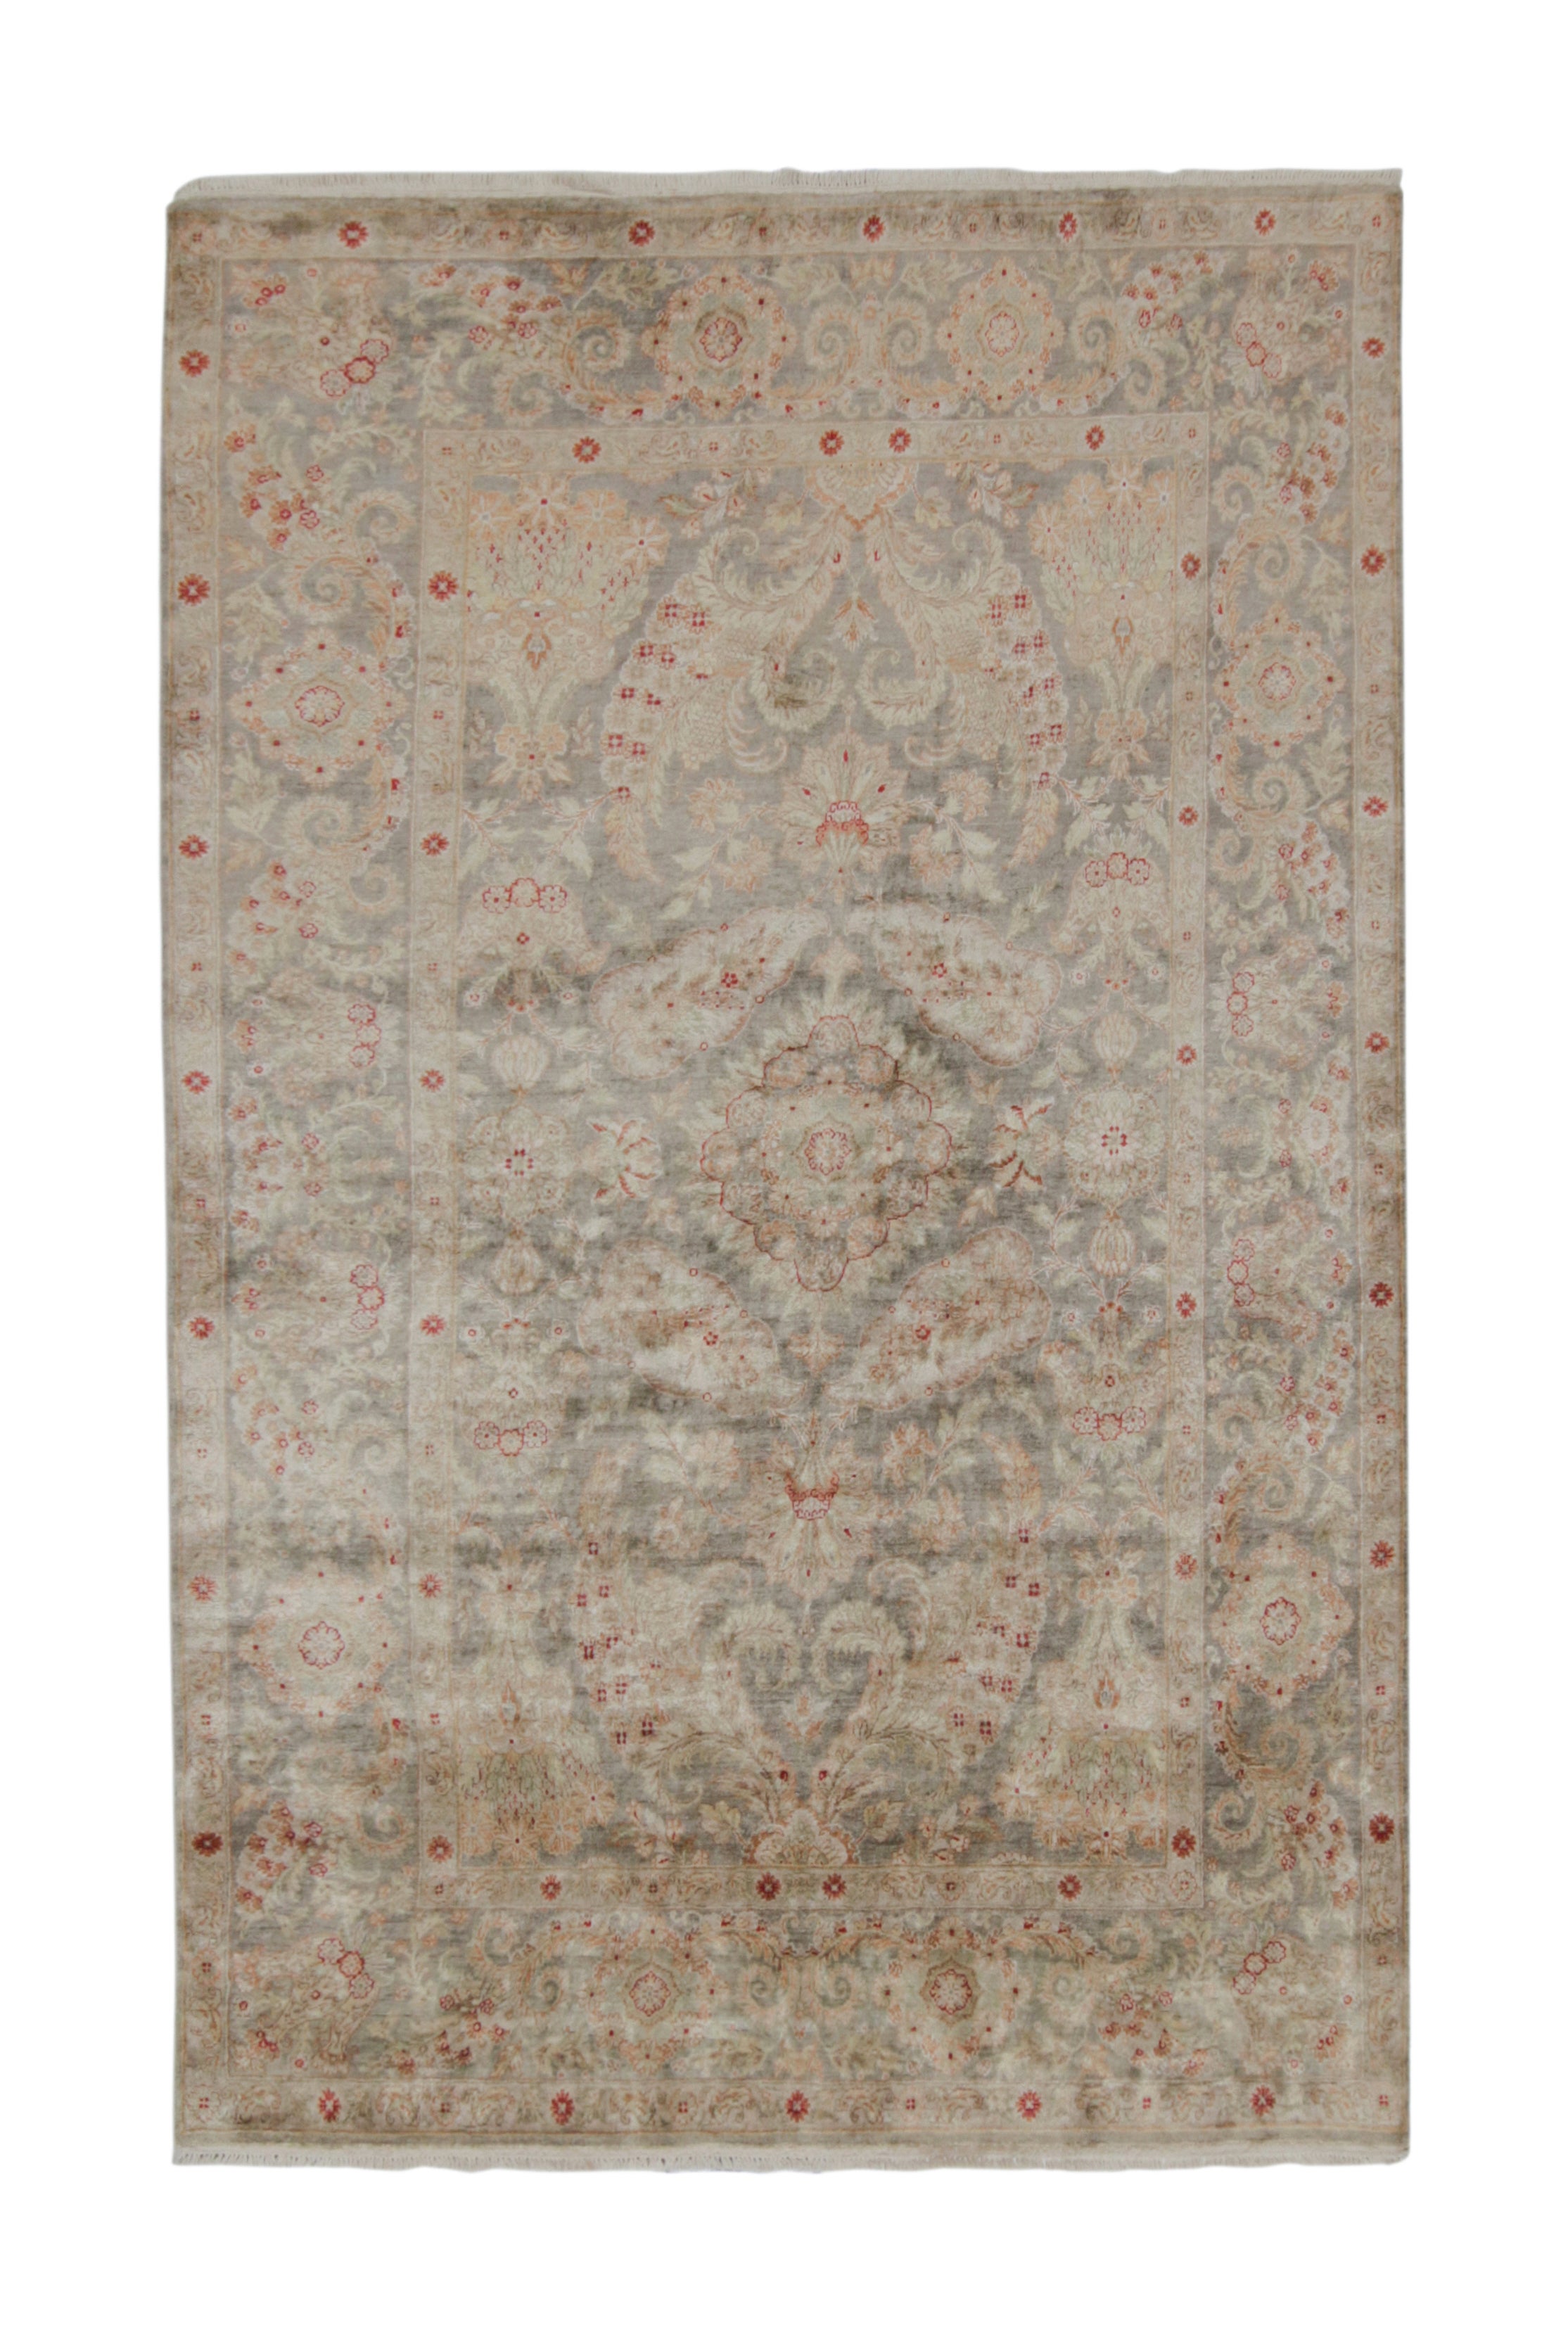 Teppich & Kelim-Teppich im klassischen Stil mit grauem, rosa und grünem Blumenmuster